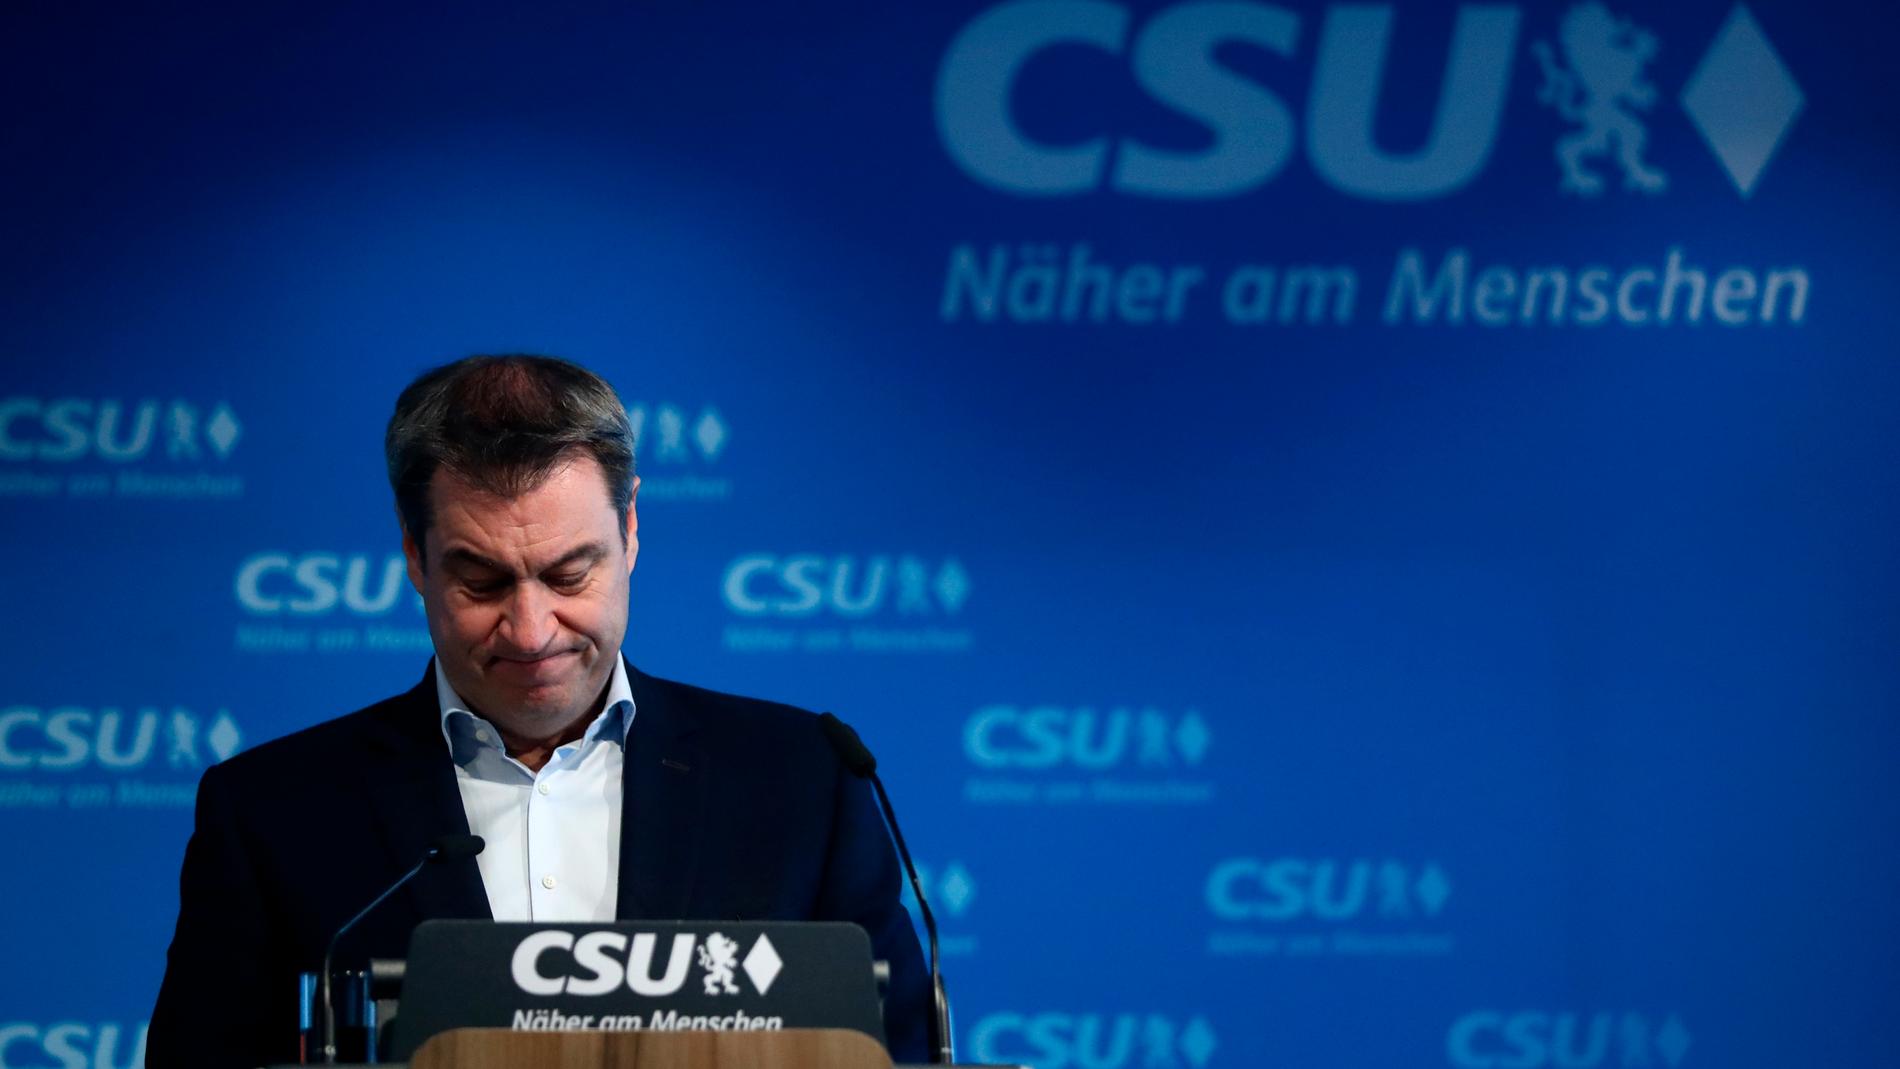 Markus Söder under presskonferensen där han meddelade att han accepterar CDU:s beslut.